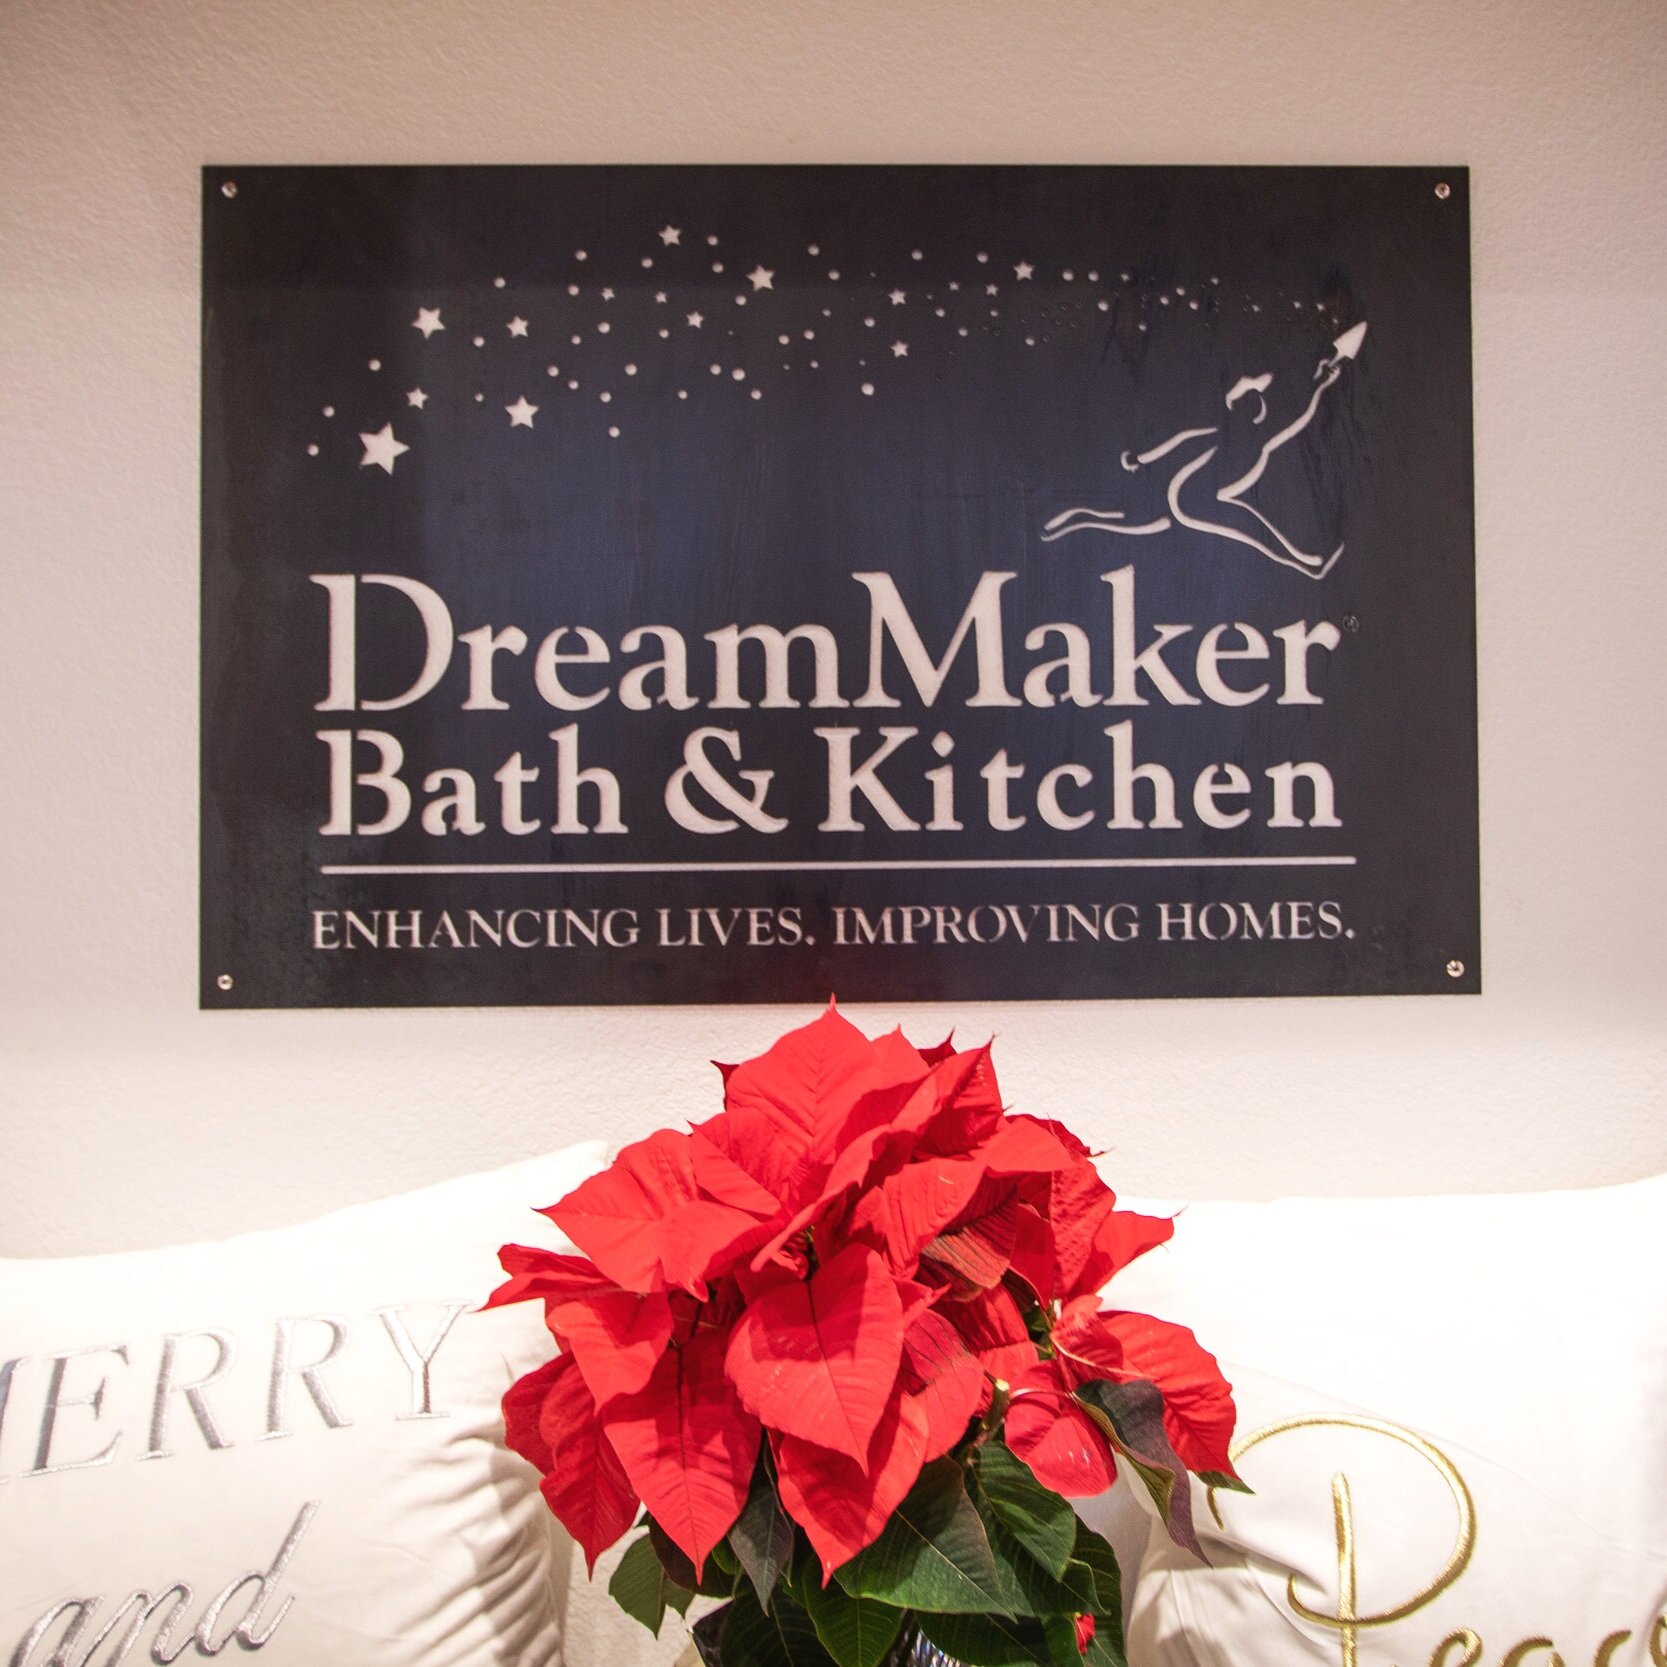  DreamMaker Bath &amp; Kitchen Design Center 